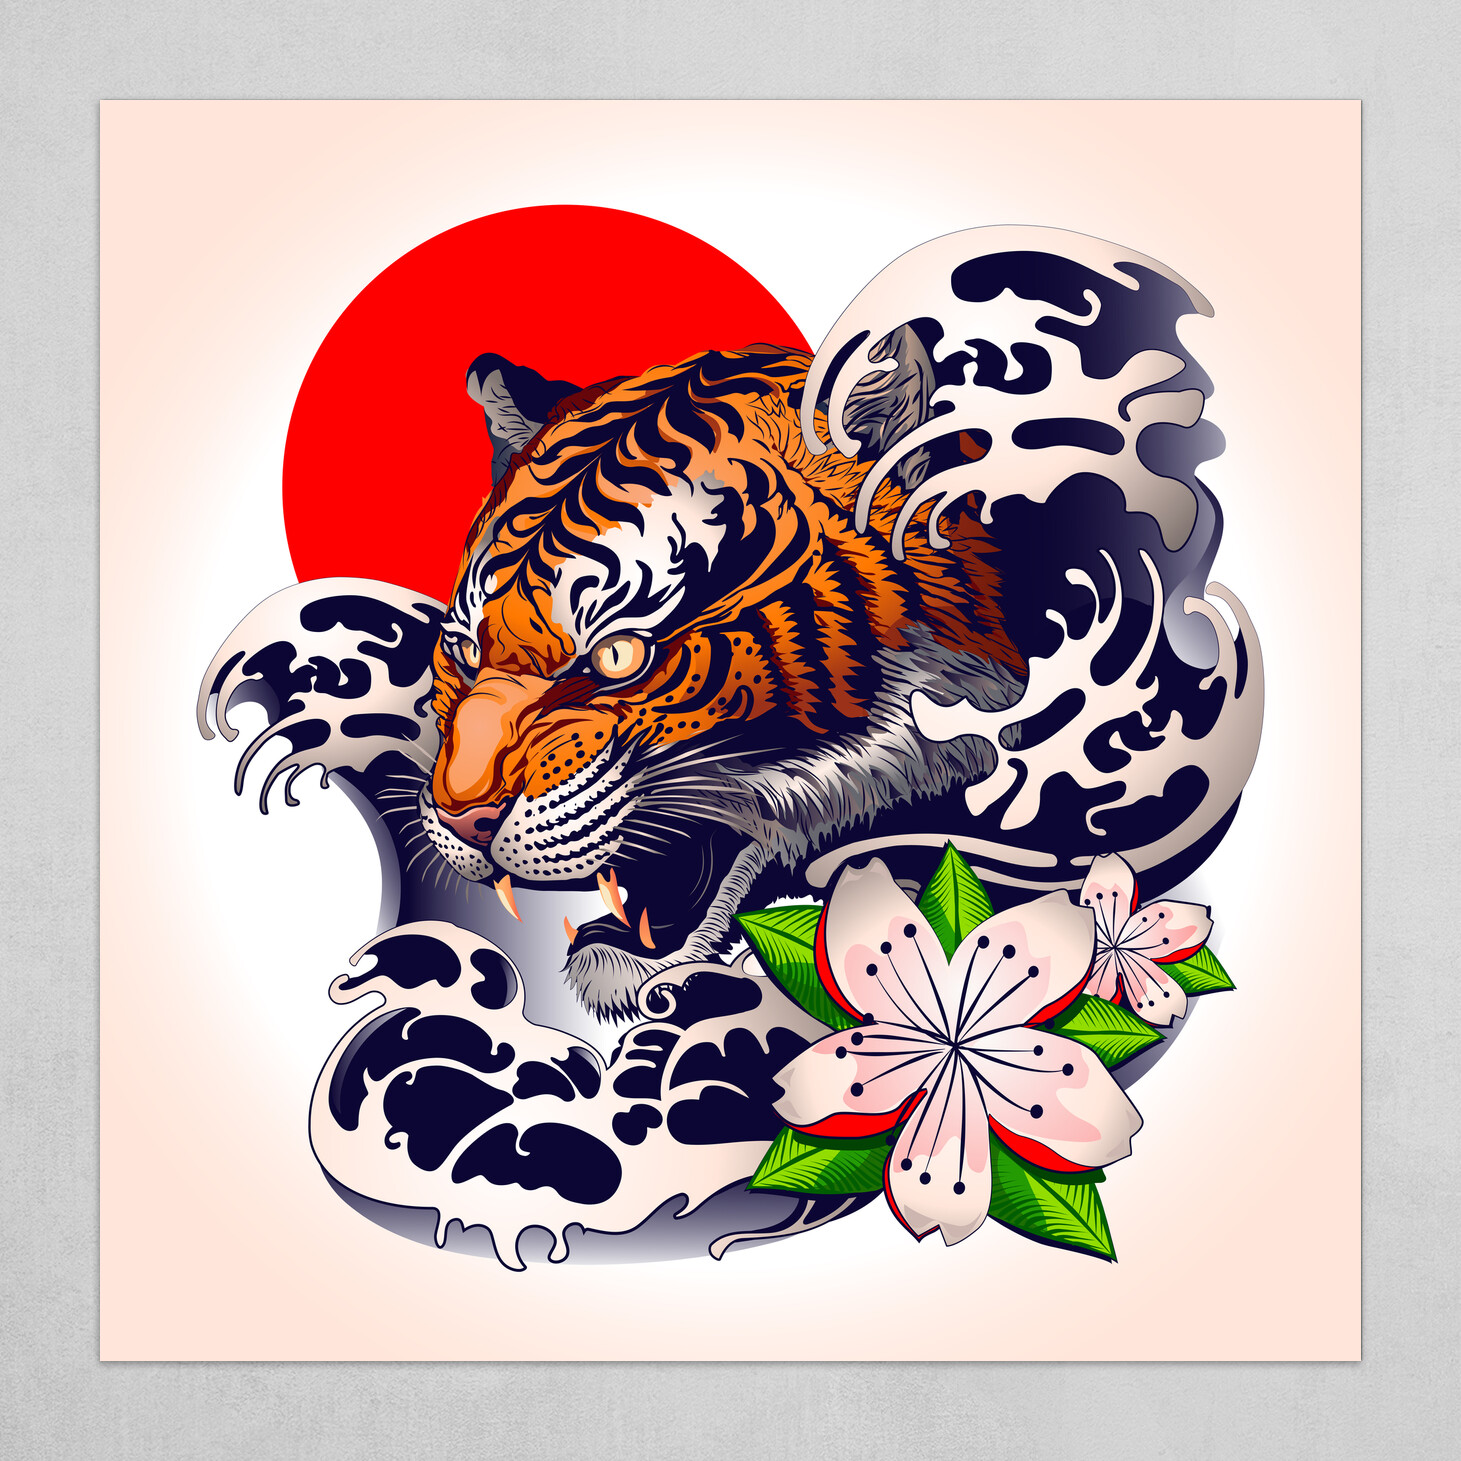 Hình xăm hổ phong cách trang trí Nhật Bản - Thưởng thức những kiệt tác xăm hình hổ phong cách trang trí Nhật Bản tinh tế, không chỉ là một hình xăm mà còn là một tác phẩm nghệ thuật đẹp mắt. Cùng khám phá và hòa mình vào thế giới đầy màu sắc của nghệ thuật xăm hình Nhật Bản.